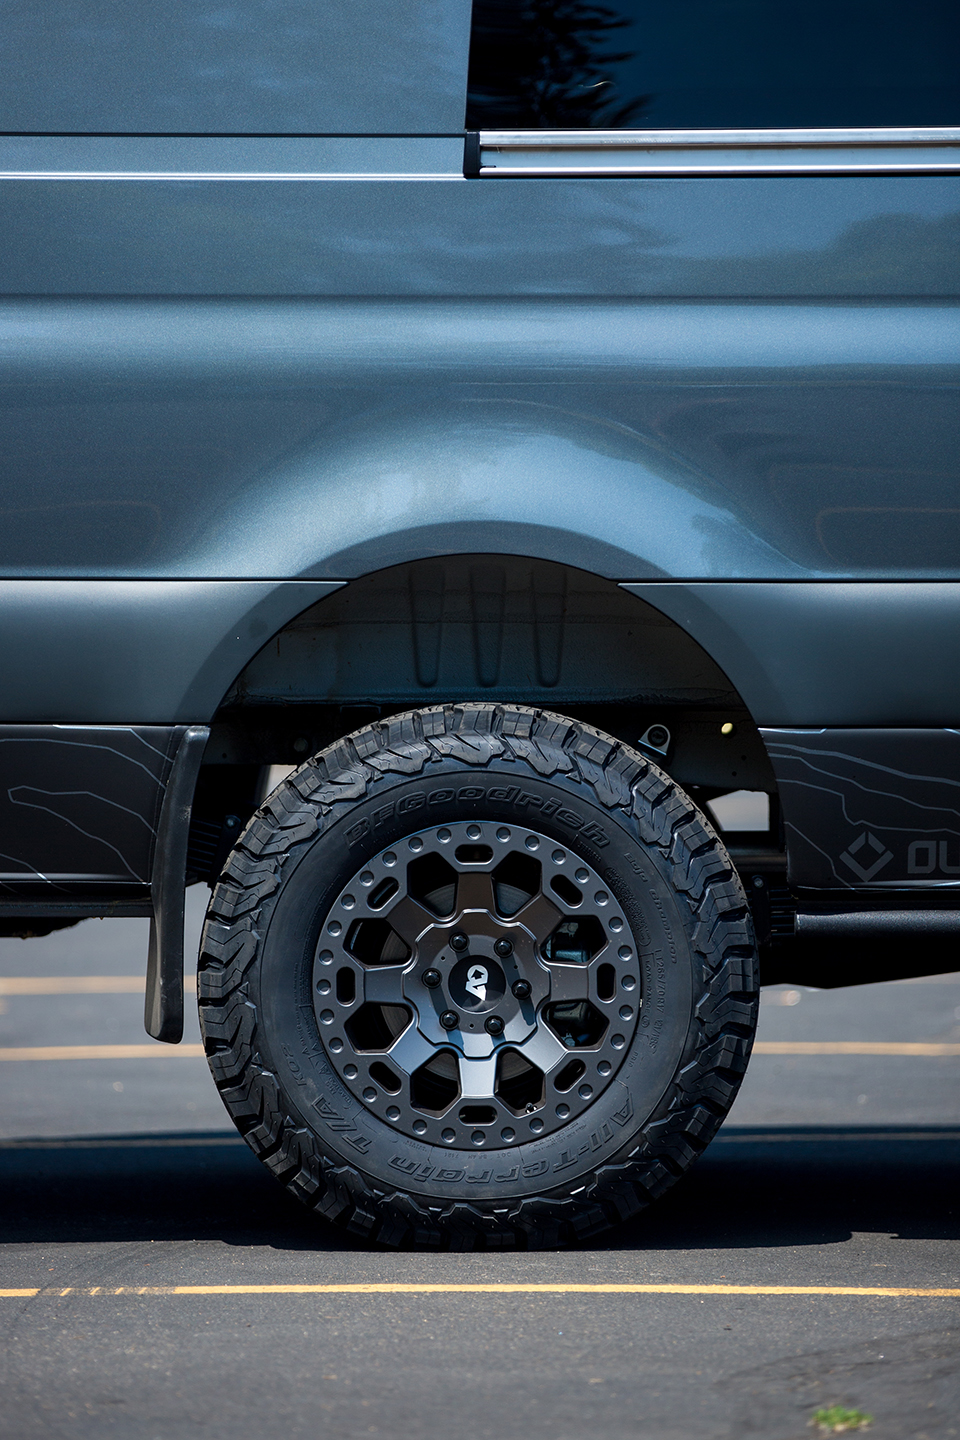 Detail of wheels and tires on custom off road sprinter van